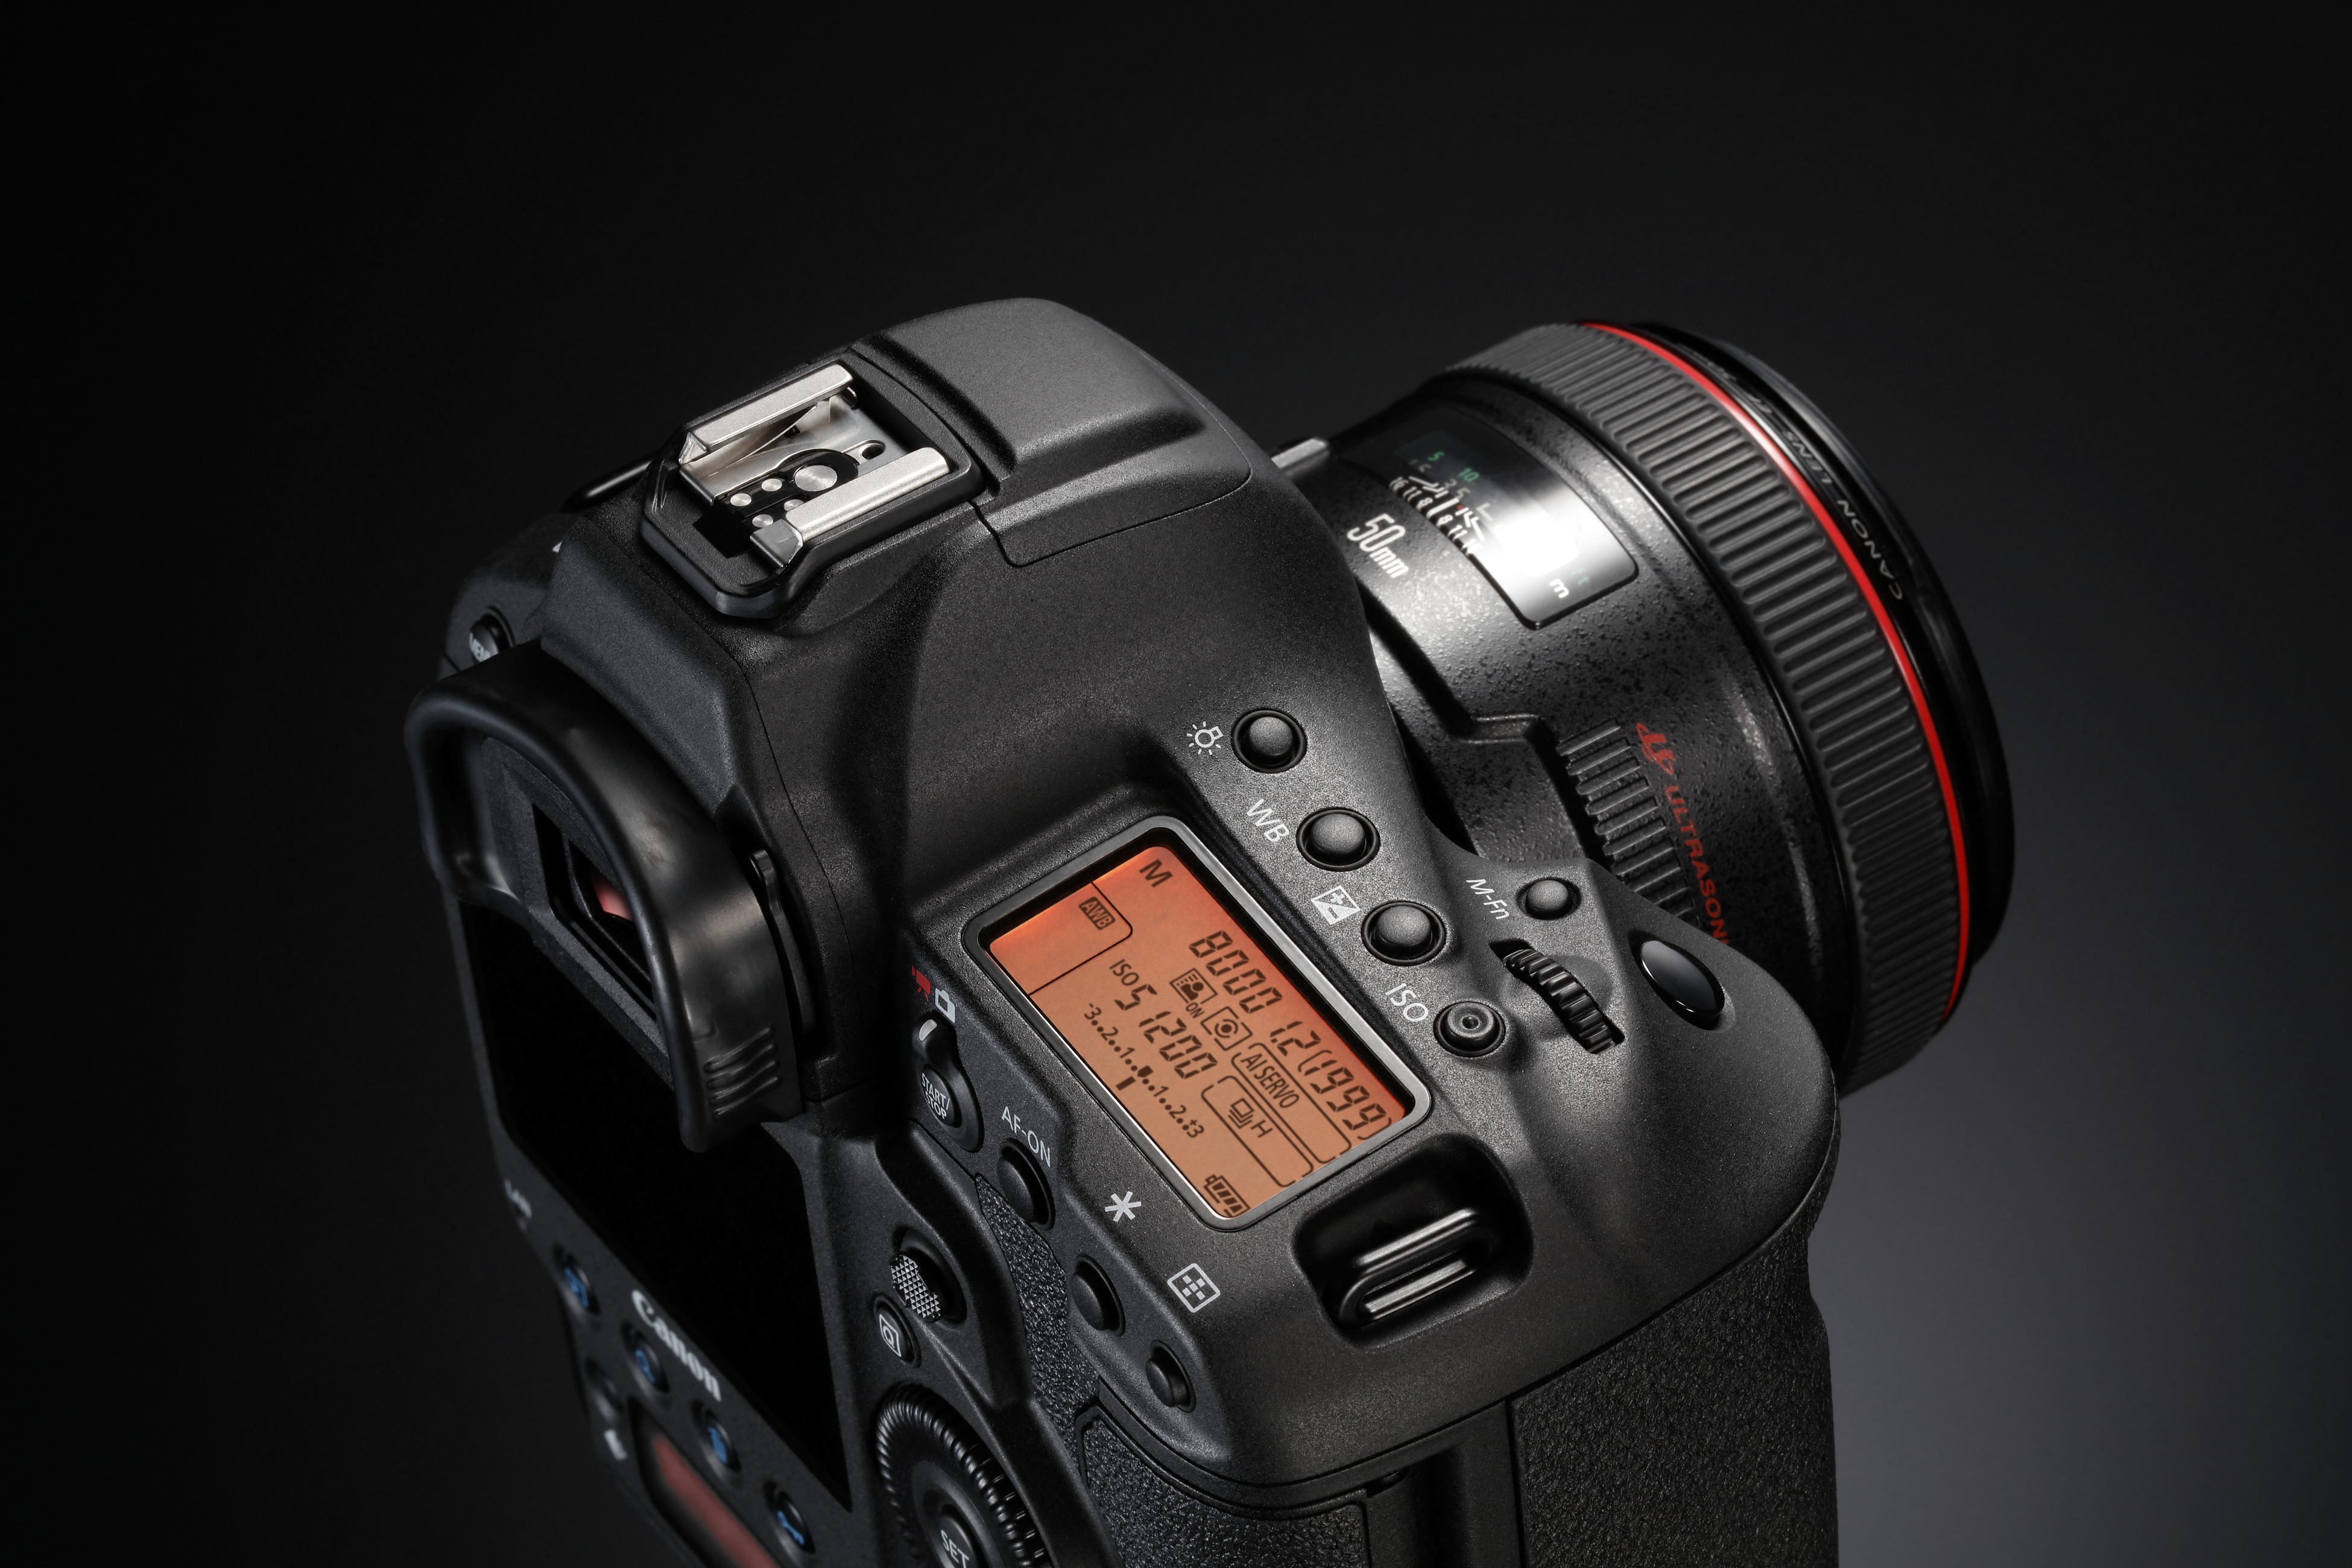 Canon EOS 1DX Mark ll